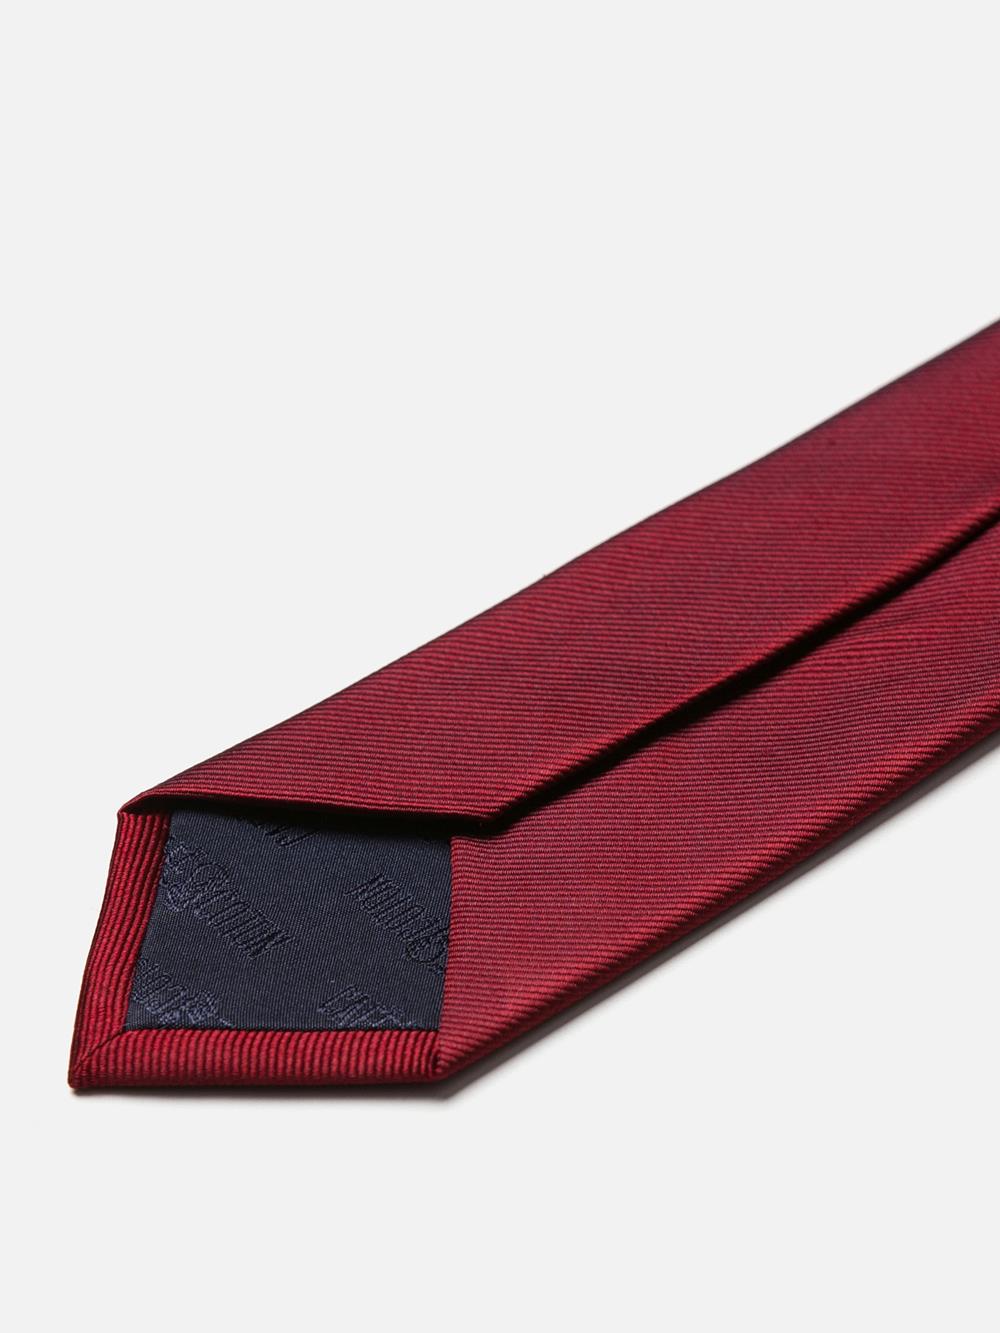 Cravate slim en soie sergée rouge